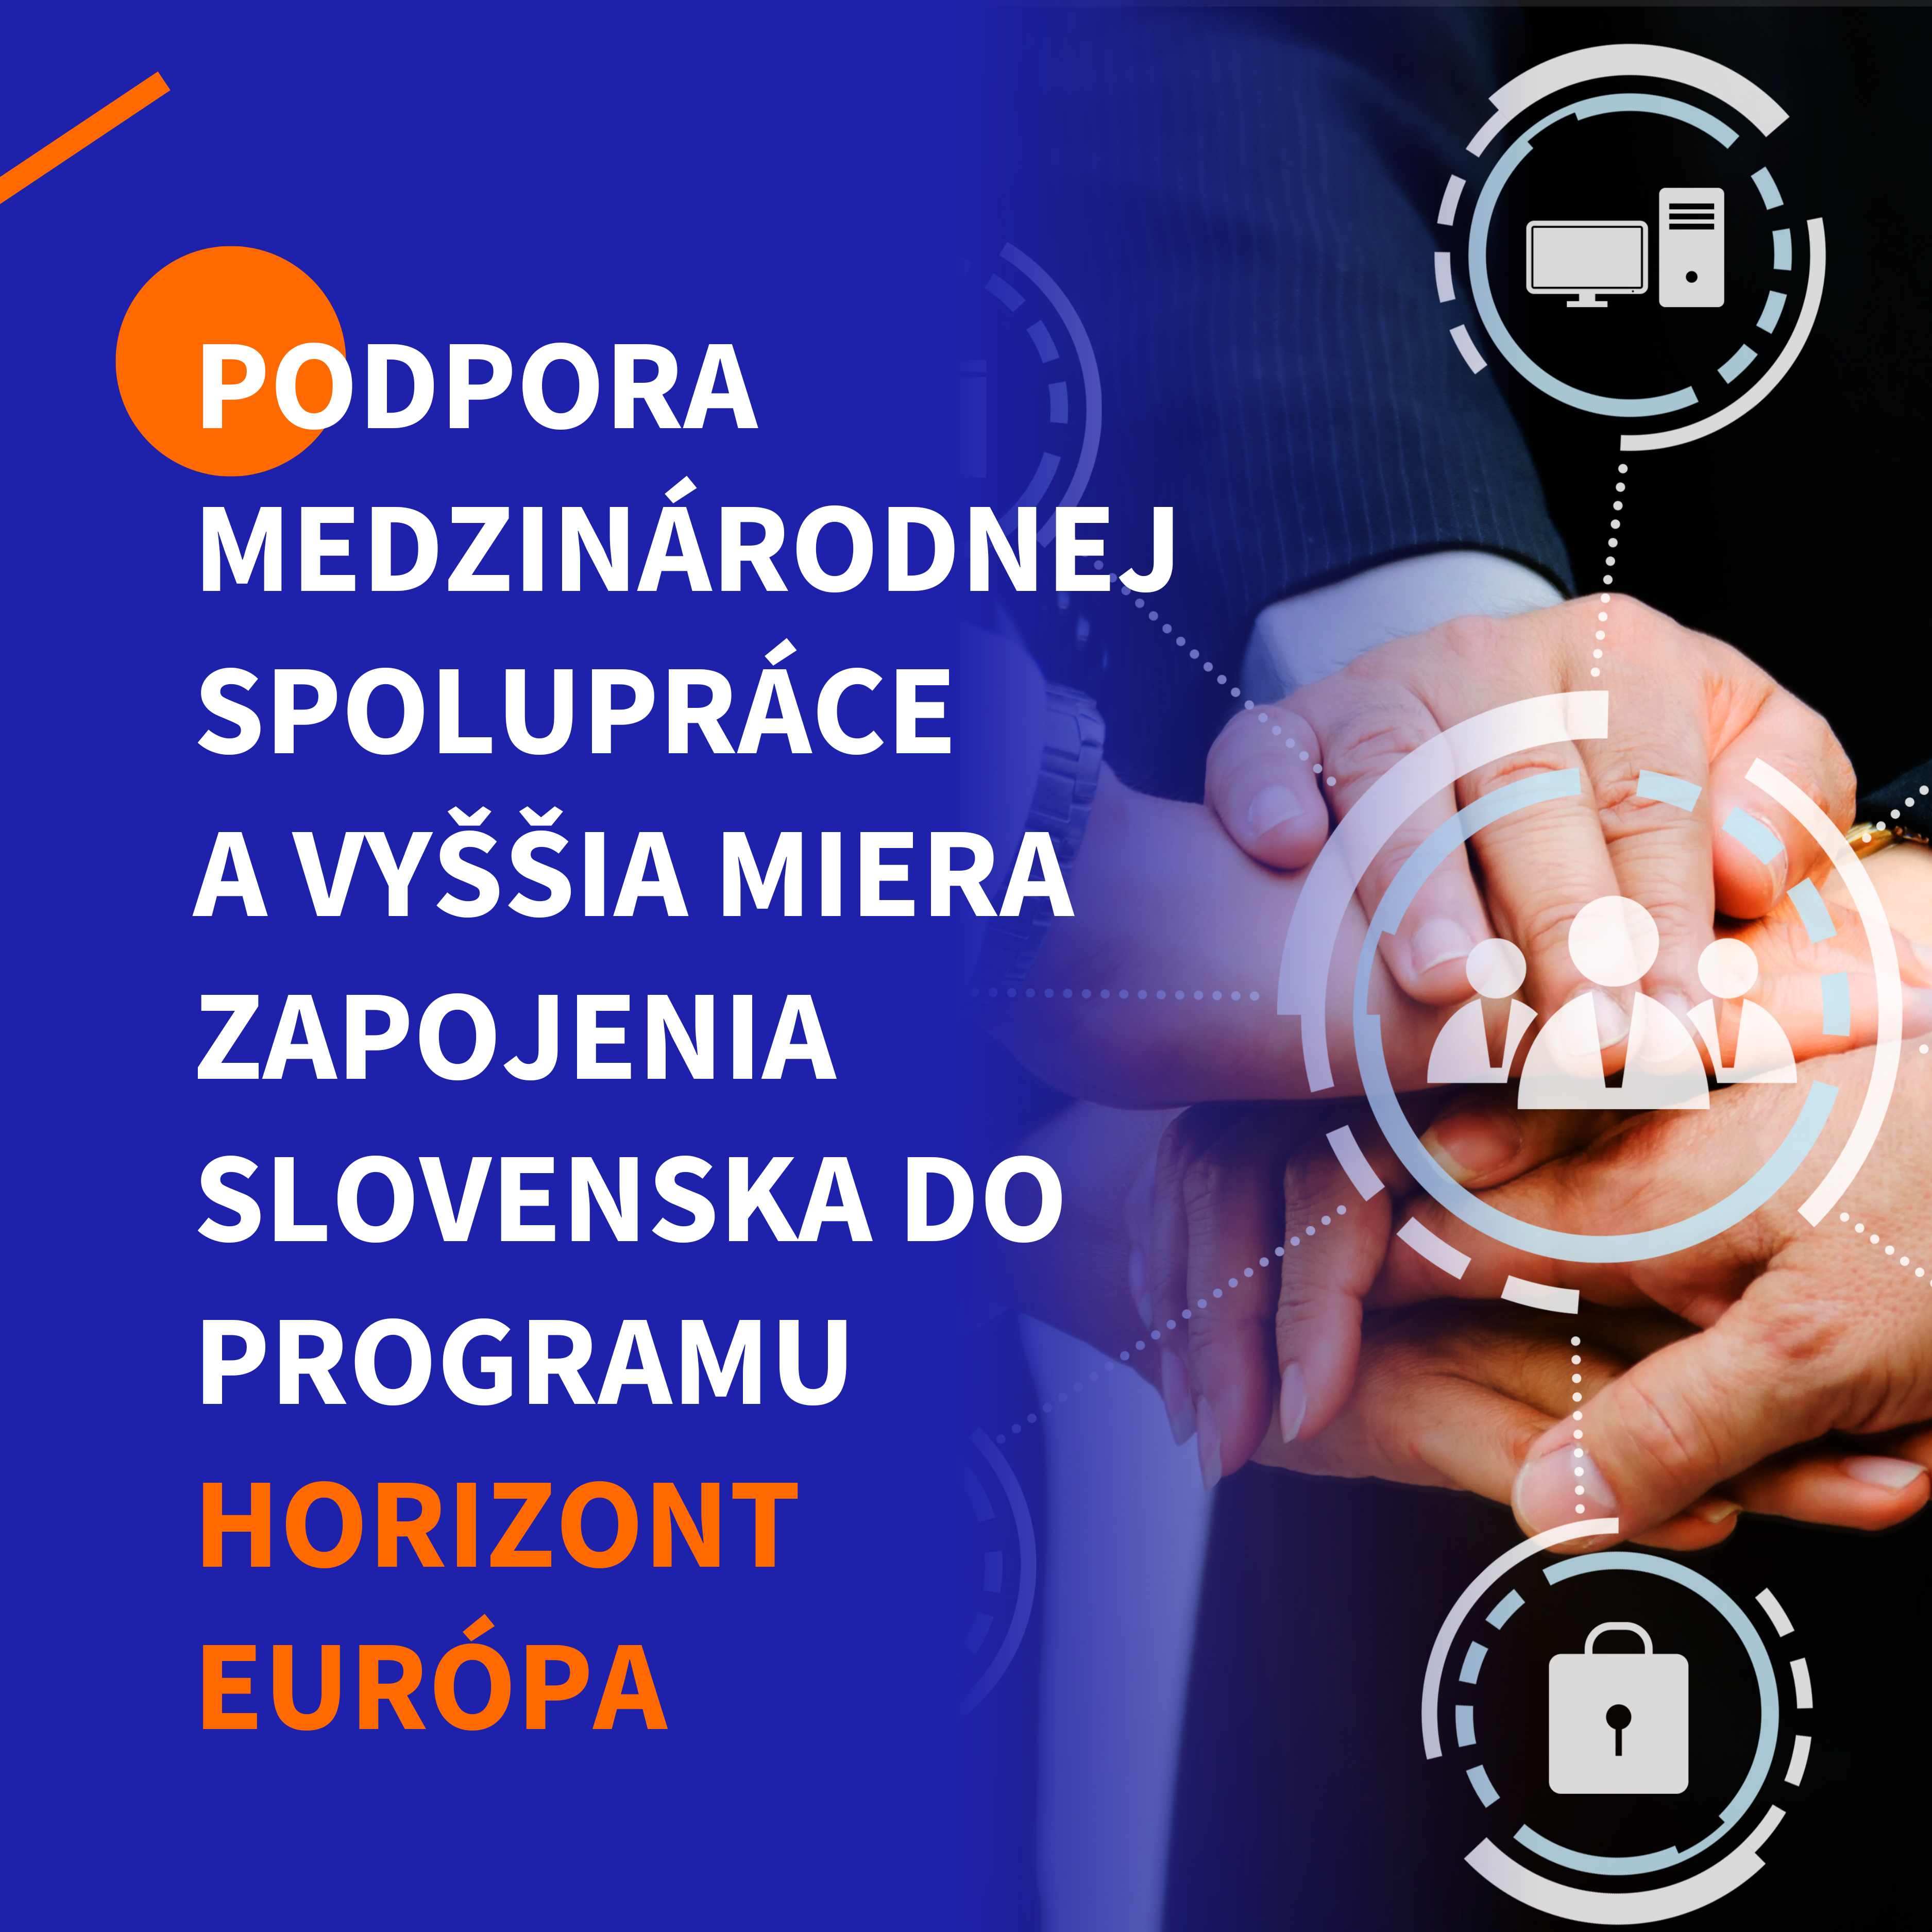 Až 42 nových projektov na podporu medzinárodnej spolupráce a zapojenia Slovenska do programu Horizont Európa